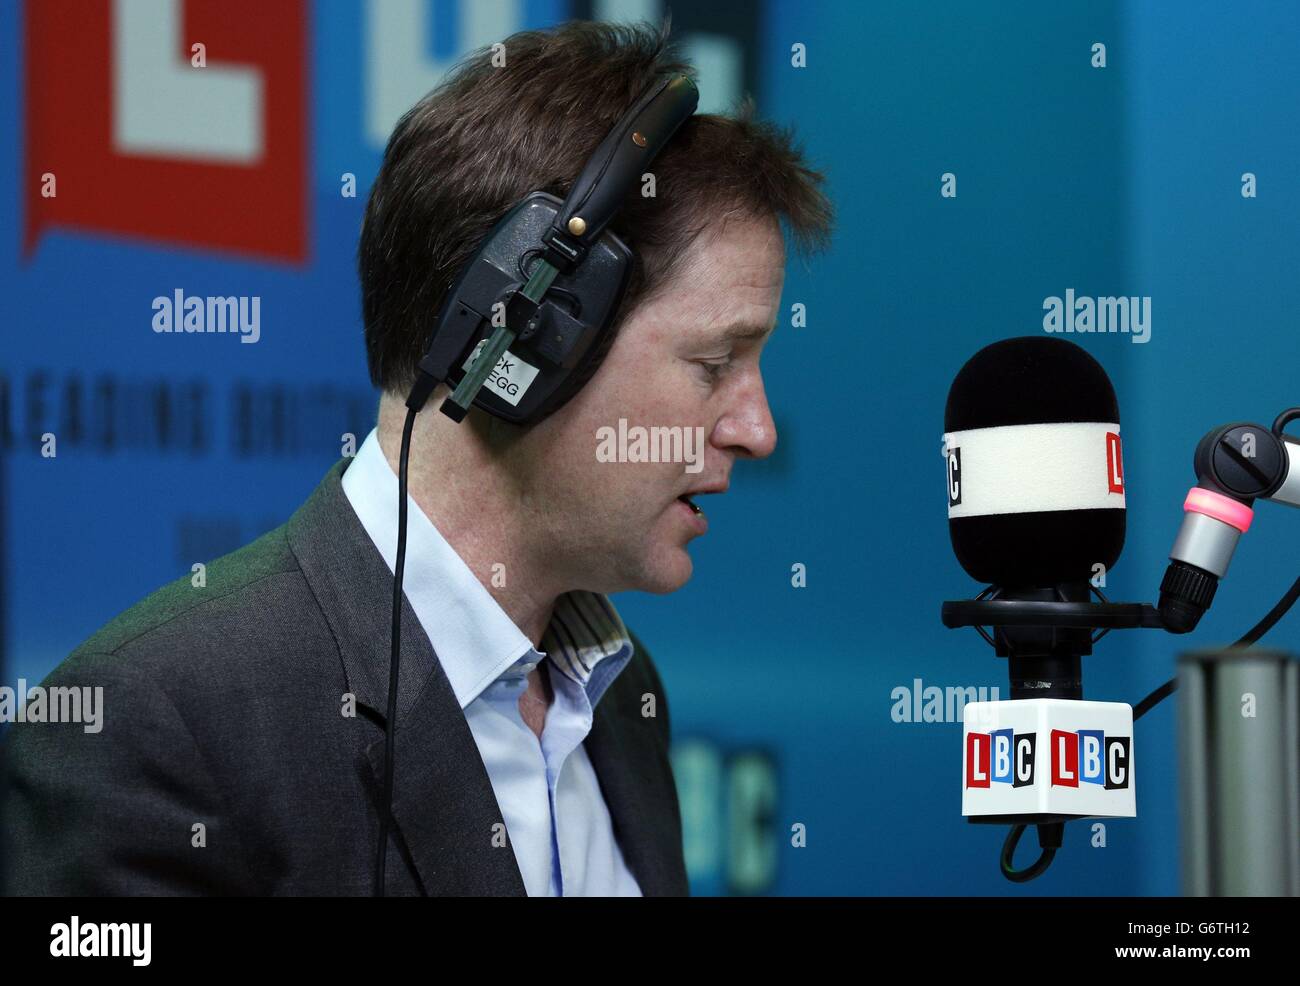 El Viceprimer Ministro Nick Clegg participa en el primer teléfono nacional " Call Clegg" en LBC desde que la estación de radio de Londres comenzó a  transmitir en todo el Reino Unido por